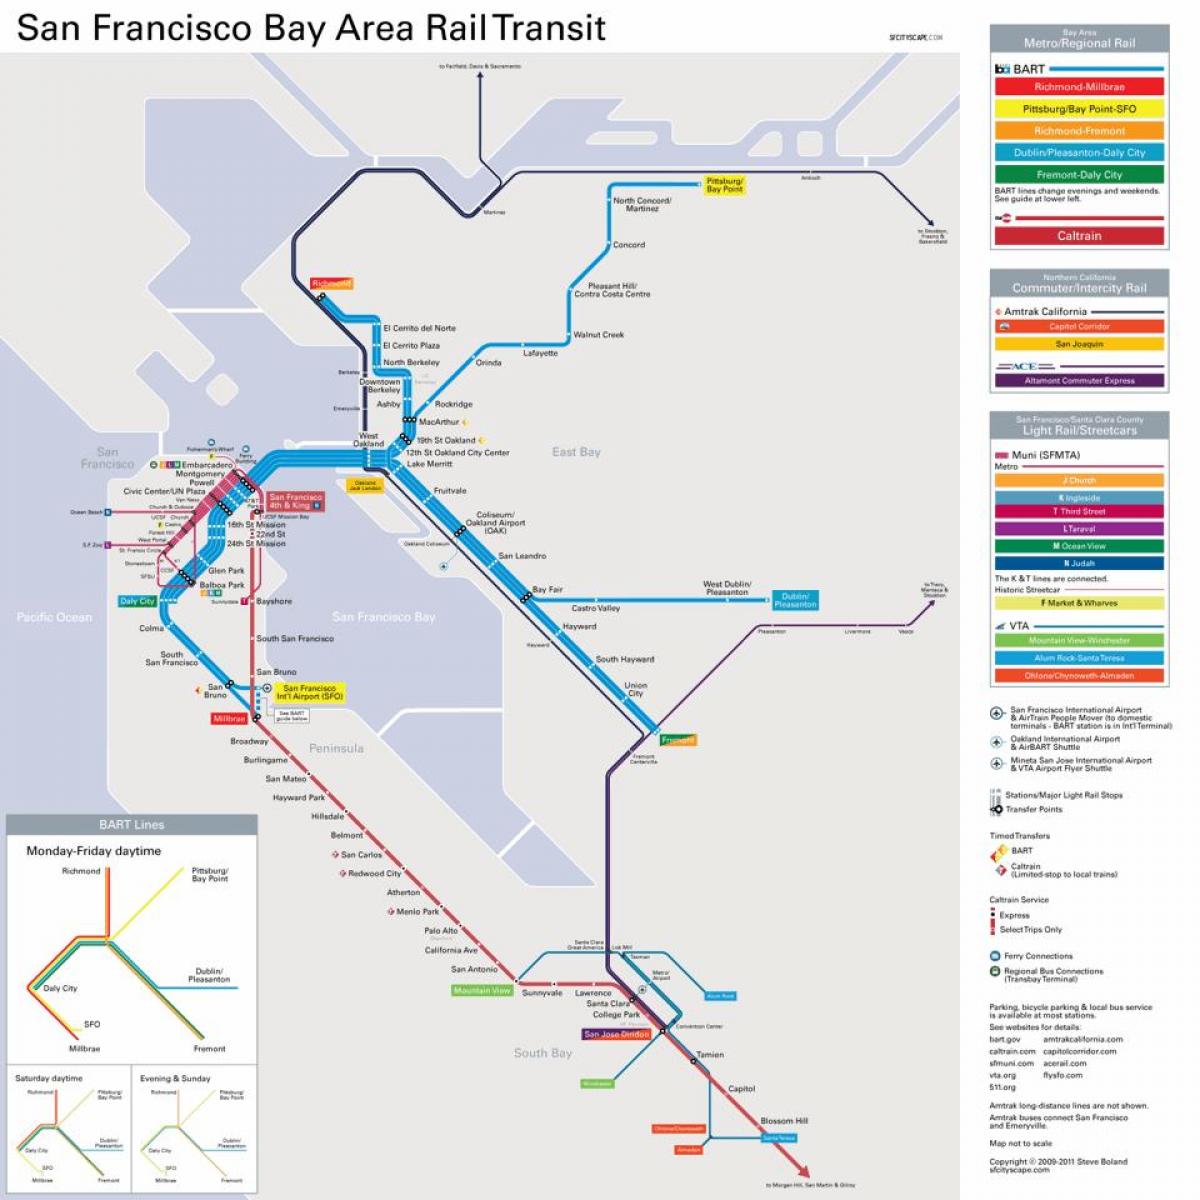 bay area garraio publikoaren mapa